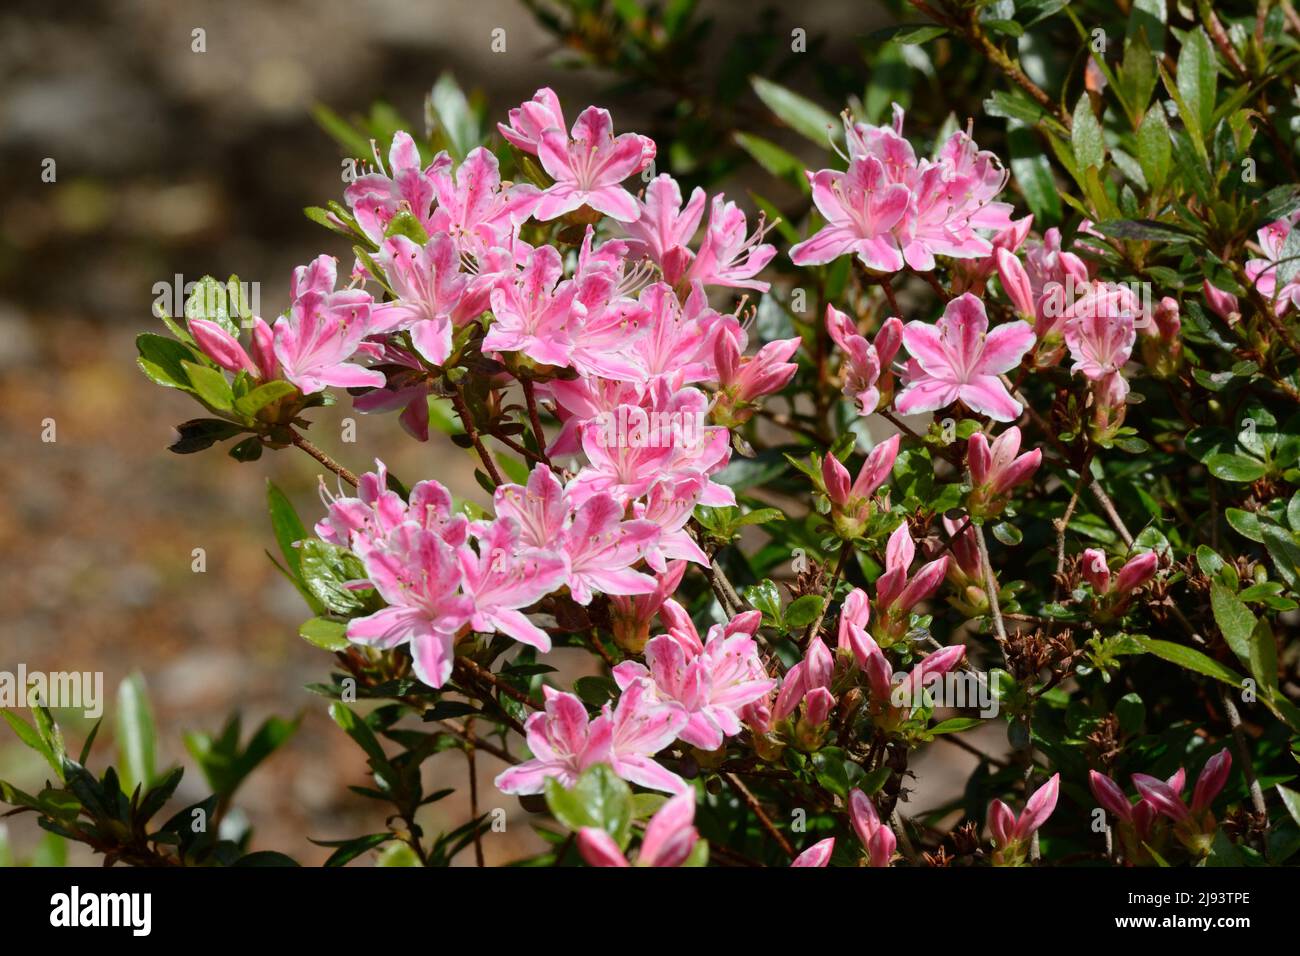 Rhododendron Kermesina Rose abondance de fleurs roses roses avec bord blanc au printemps Banque D'Images